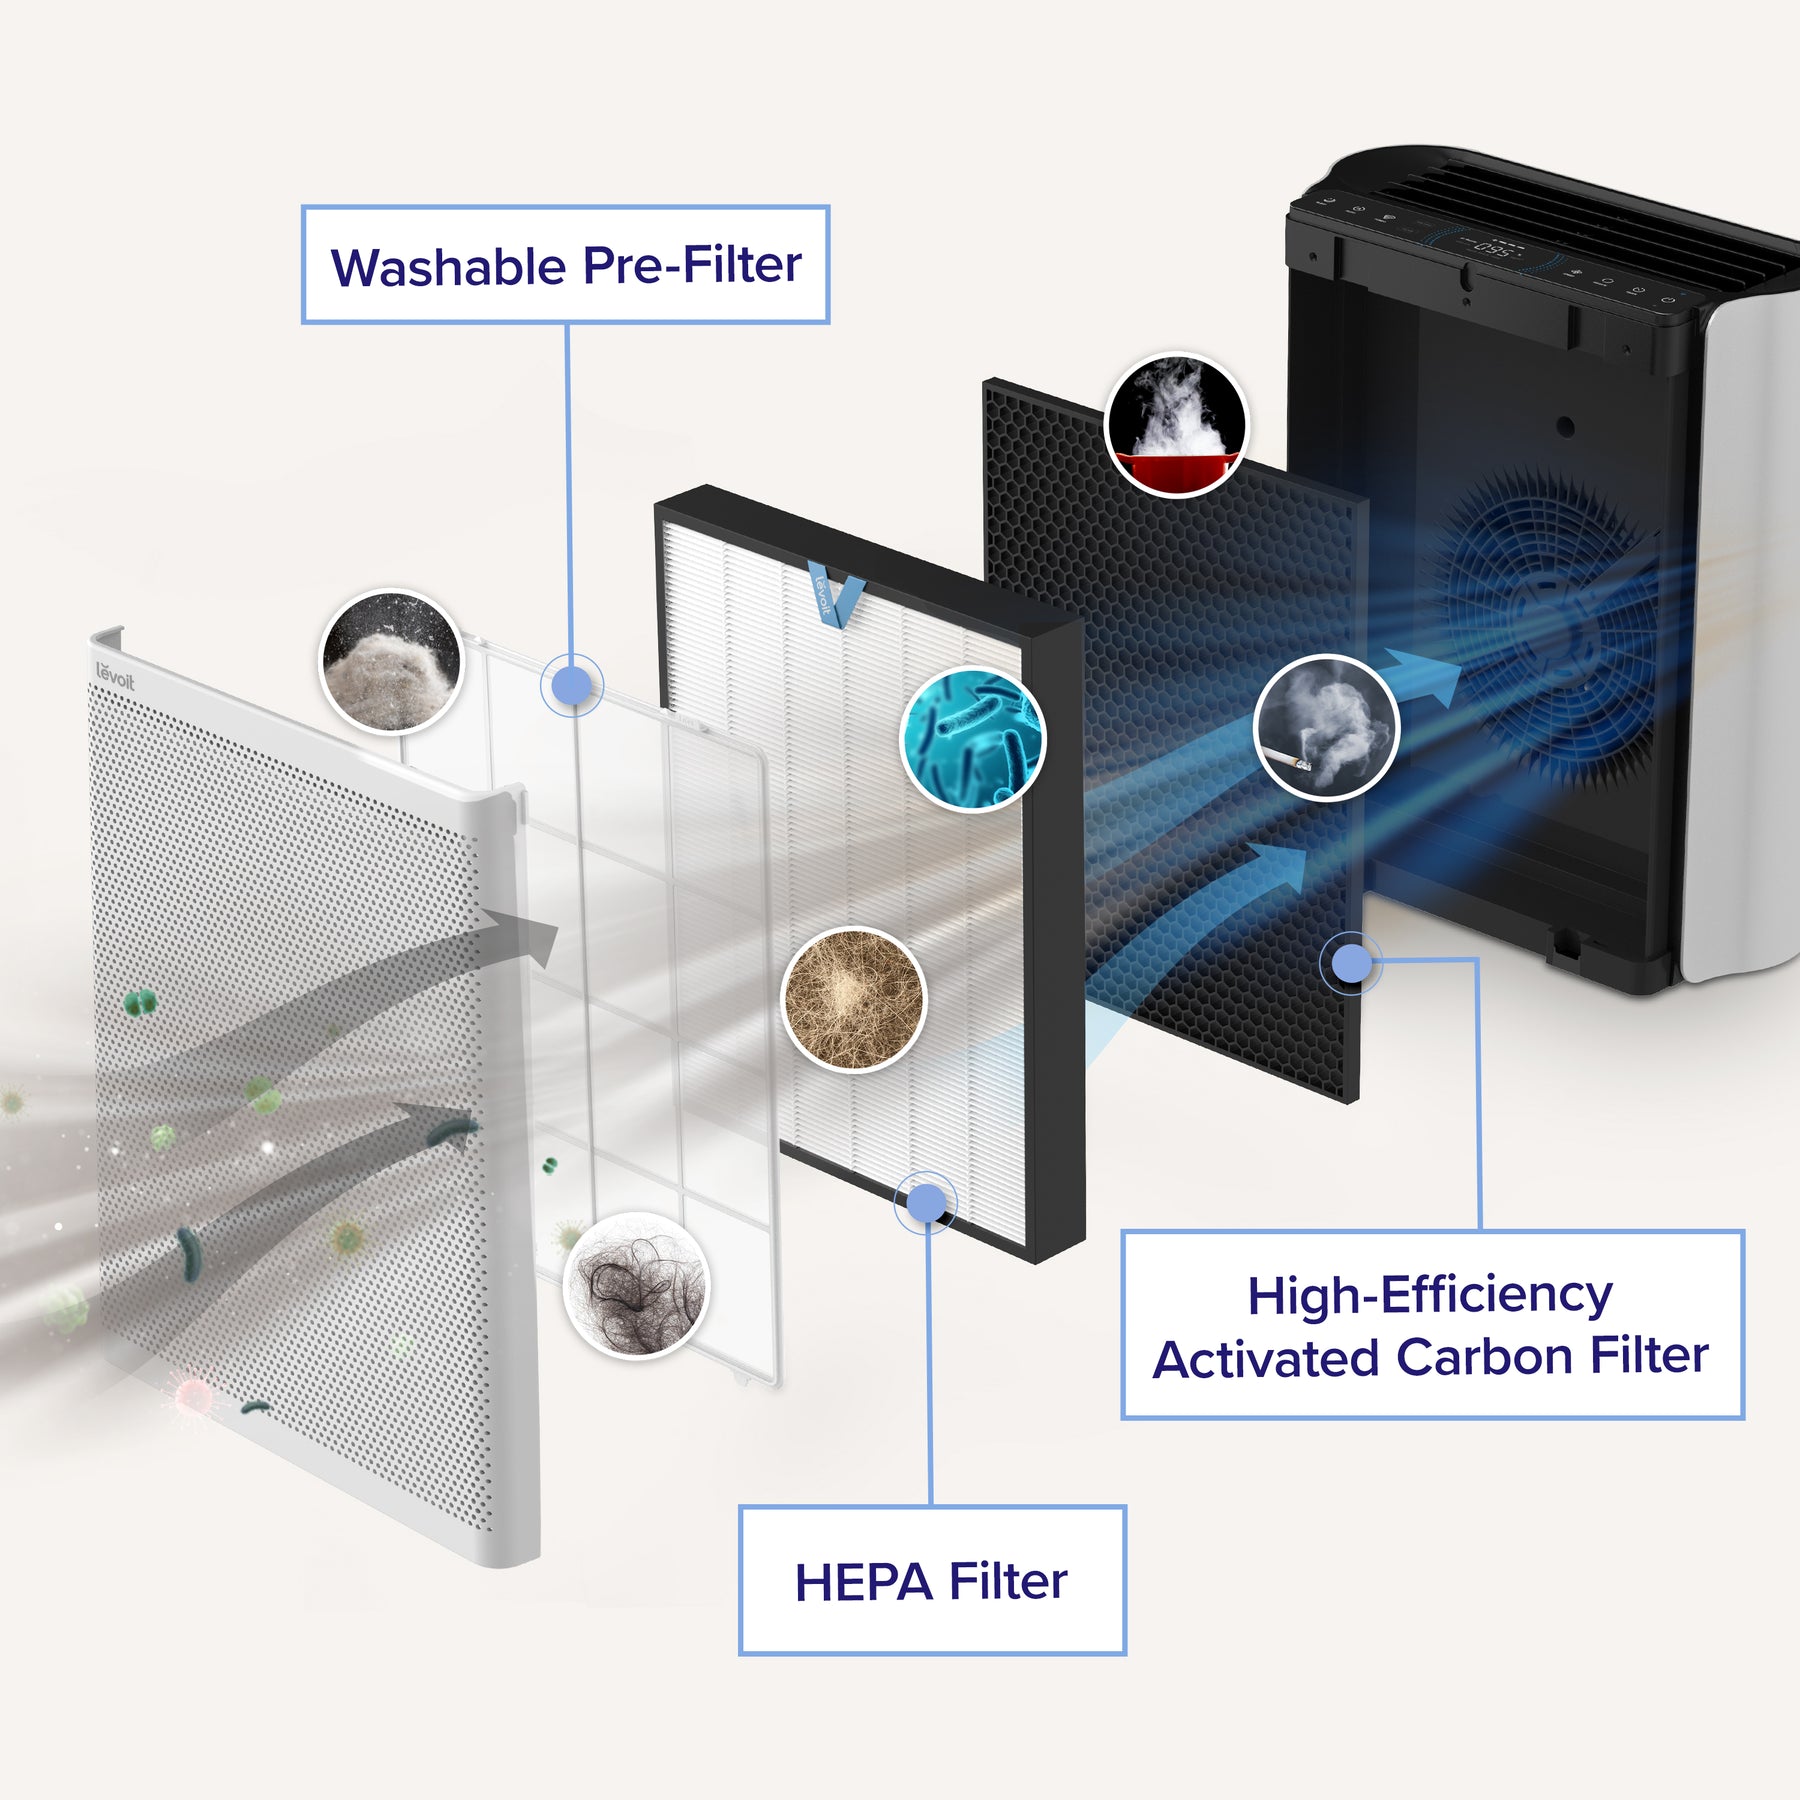 Levoit Everest Air Smart Air Purifier Original Replacement Filter